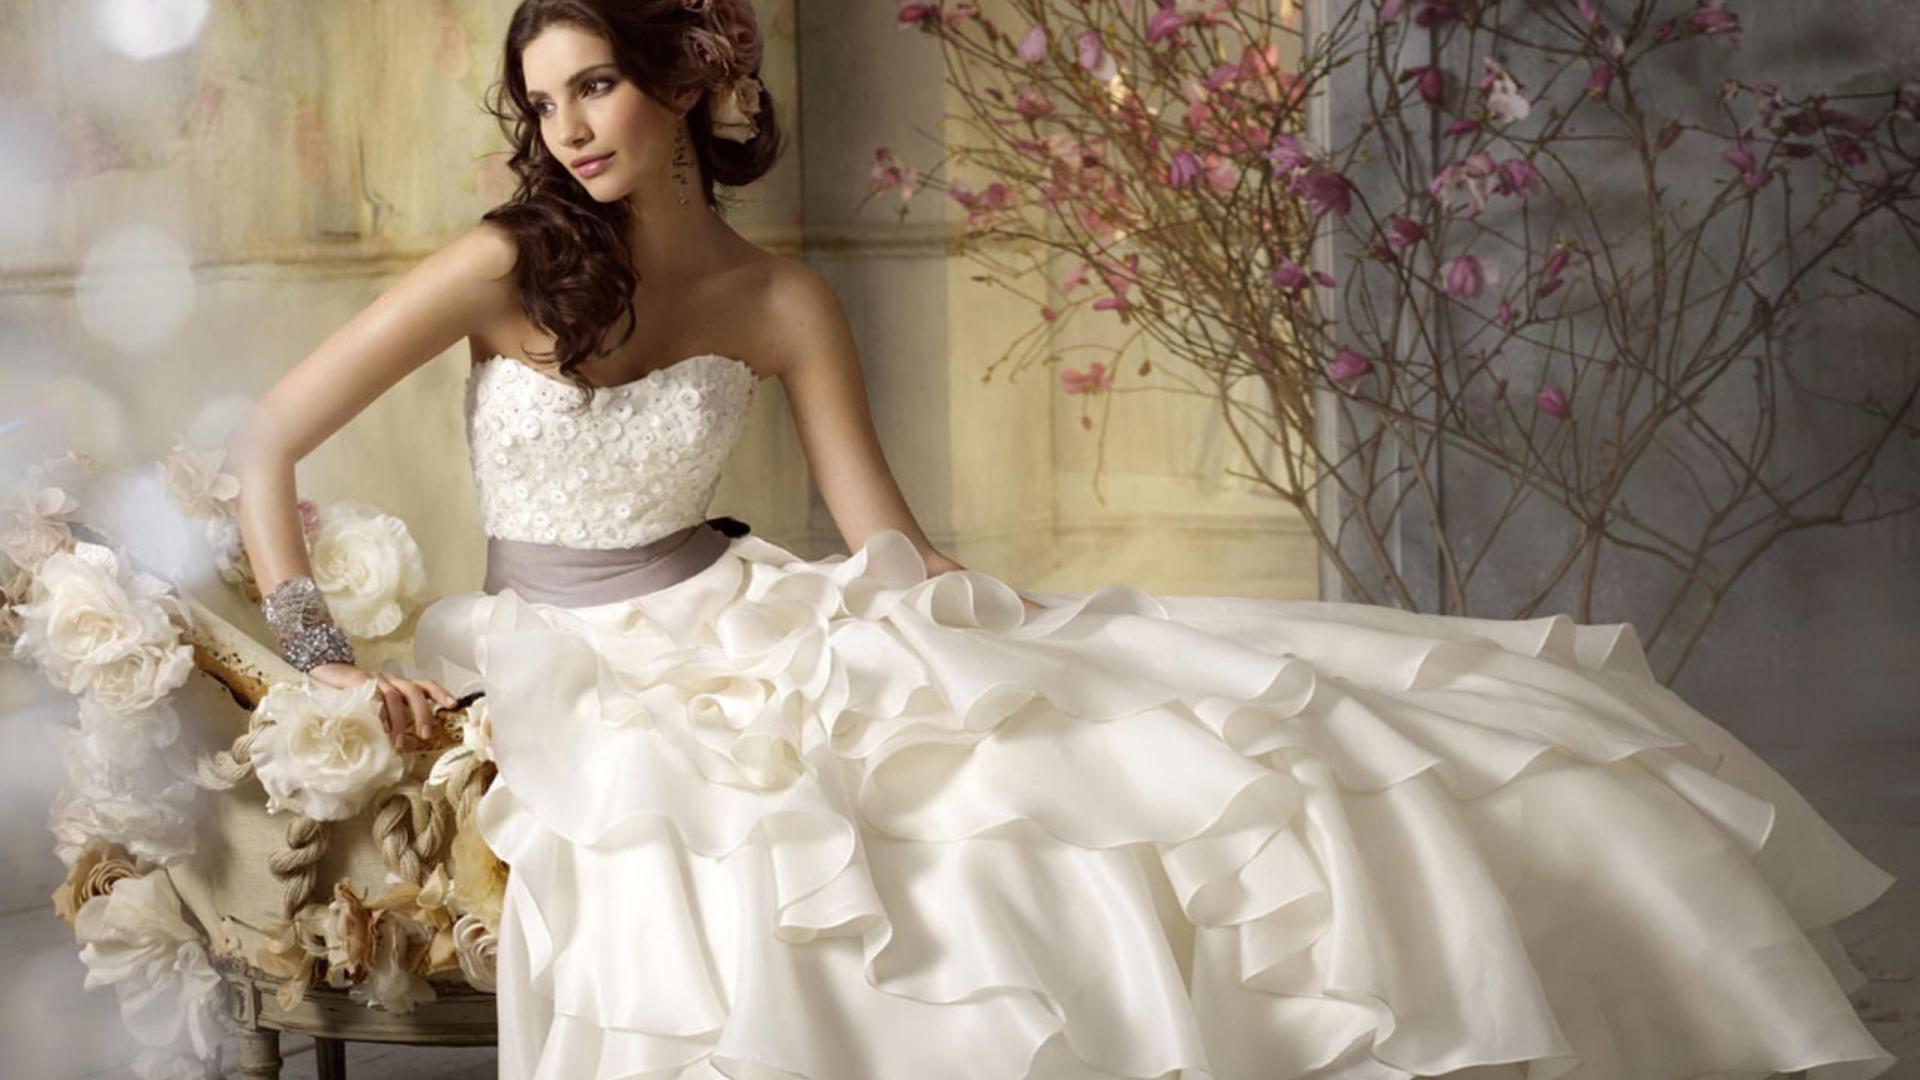 White Wedding Dress For Women Wallpaper